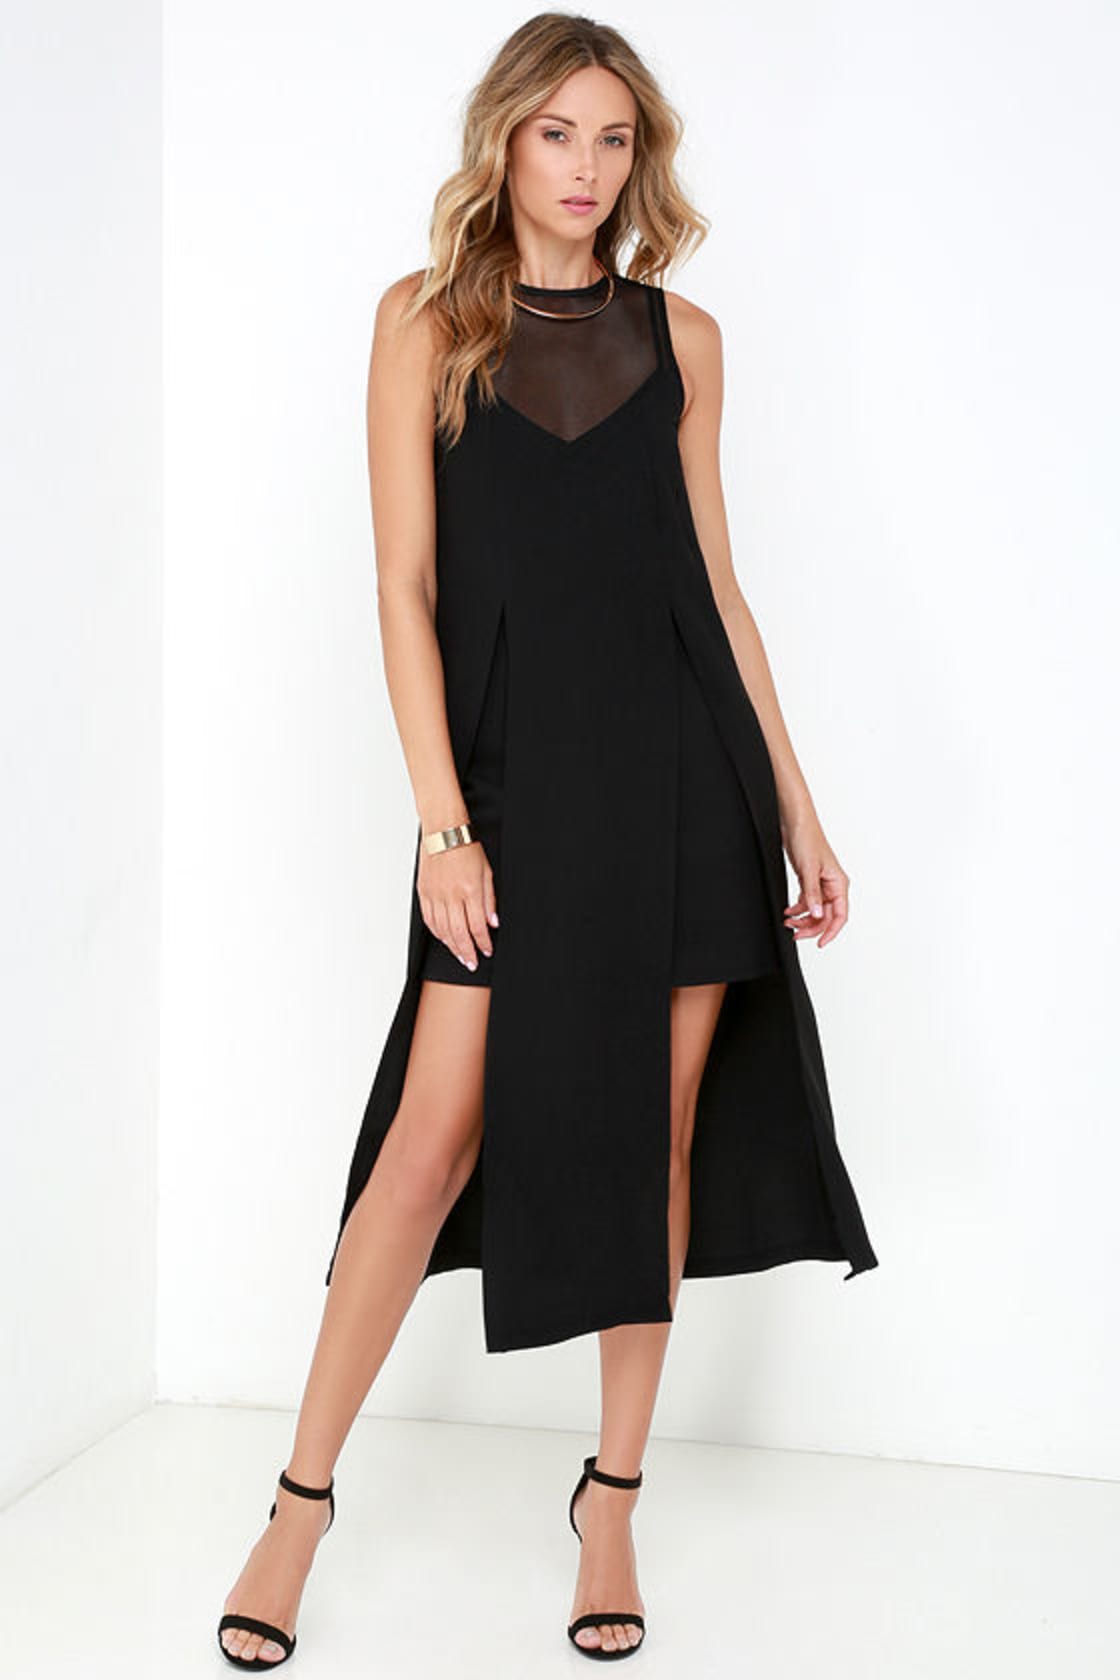 Elliatt Distinct Dress - Black Dress - Midi Dress - Mesh Dress - $121. ...